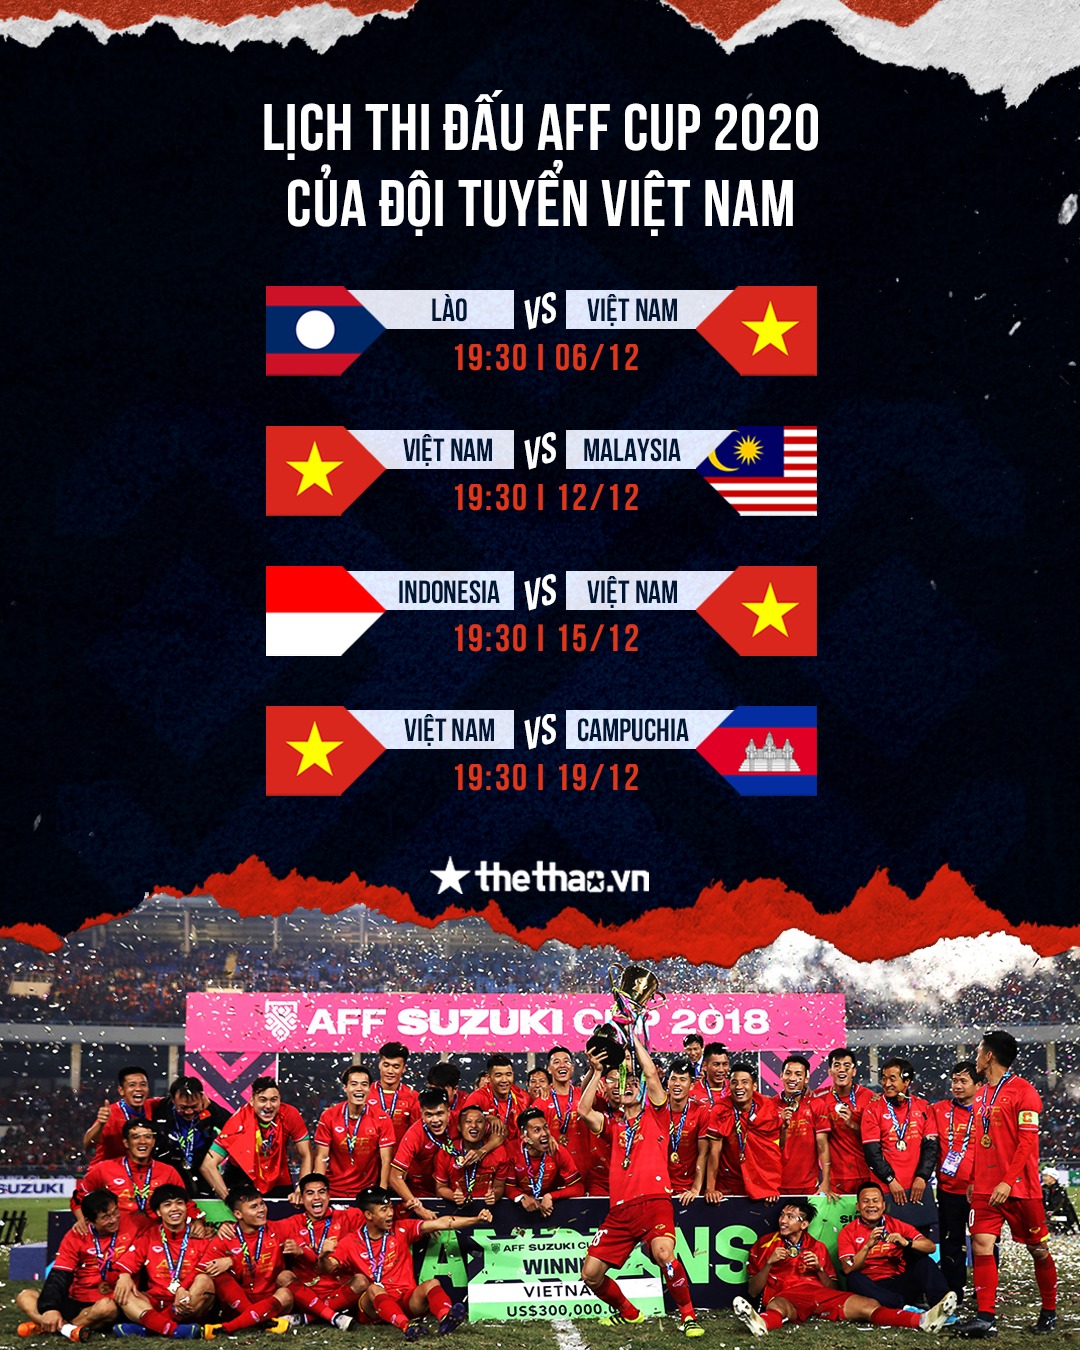 Đối thủ gây áp lực lên BTC AFF Cup 2021, HLV Park 'đòi' bổ sung Đỗ Hùng Dũng cho ĐT Việt Nam?